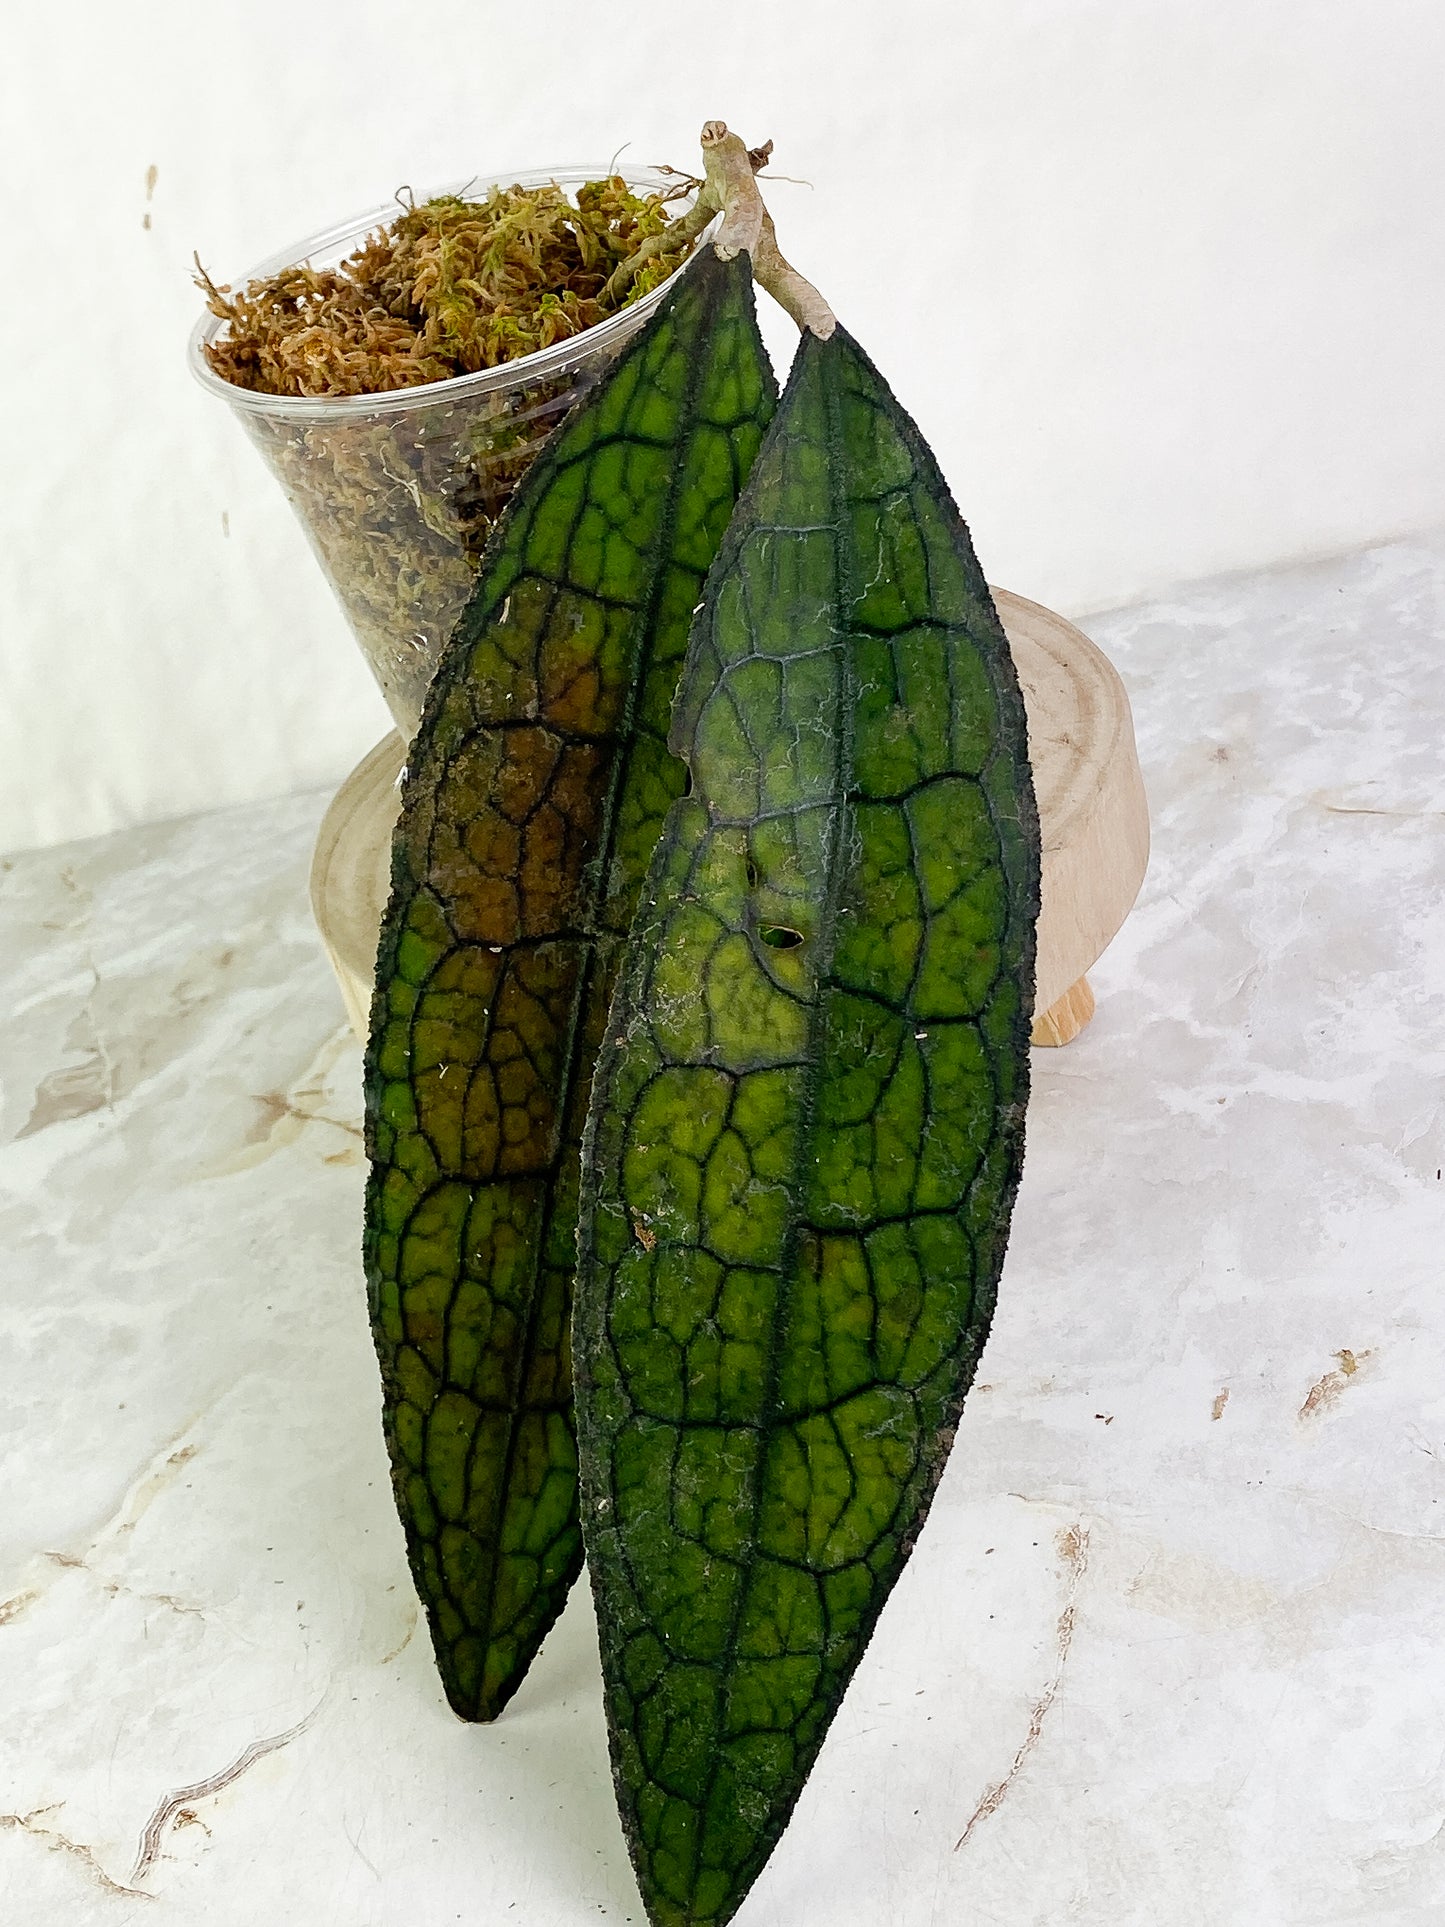 Hoya Clemensiorum 2 leaves (9" long)